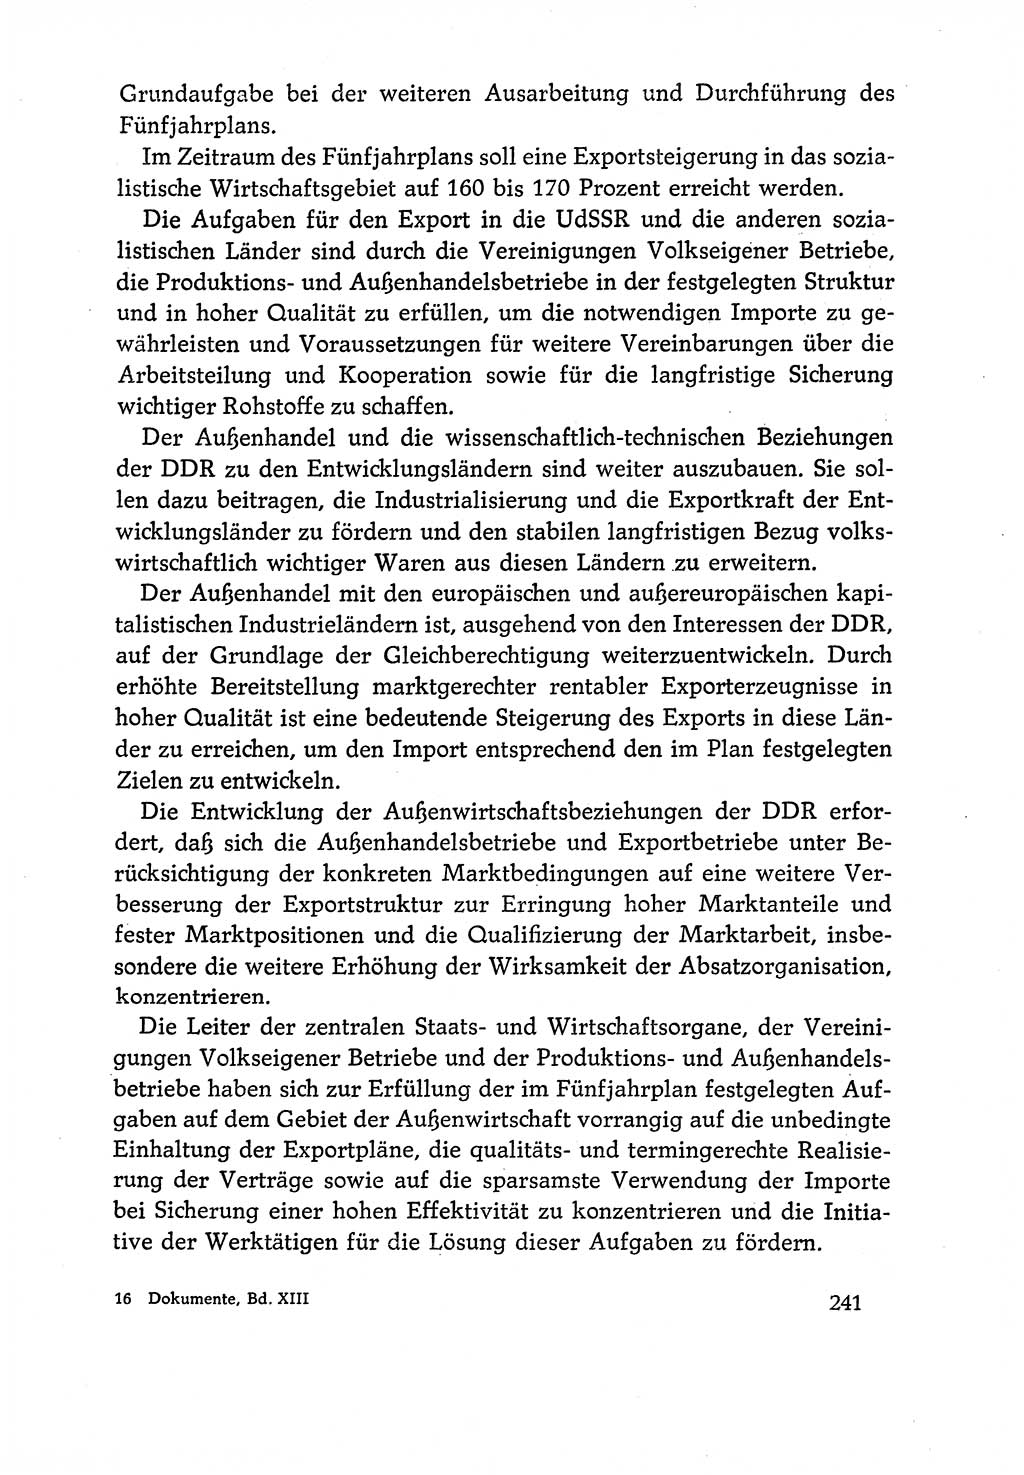 Dokumente der Sozialistischen Einheitspartei Deutschlands (SED) [Deutsche Demokratische Republik (DDR)] 1970-1971, Seite 241 (Dok. SED DDR 1970-1971, S. 241)